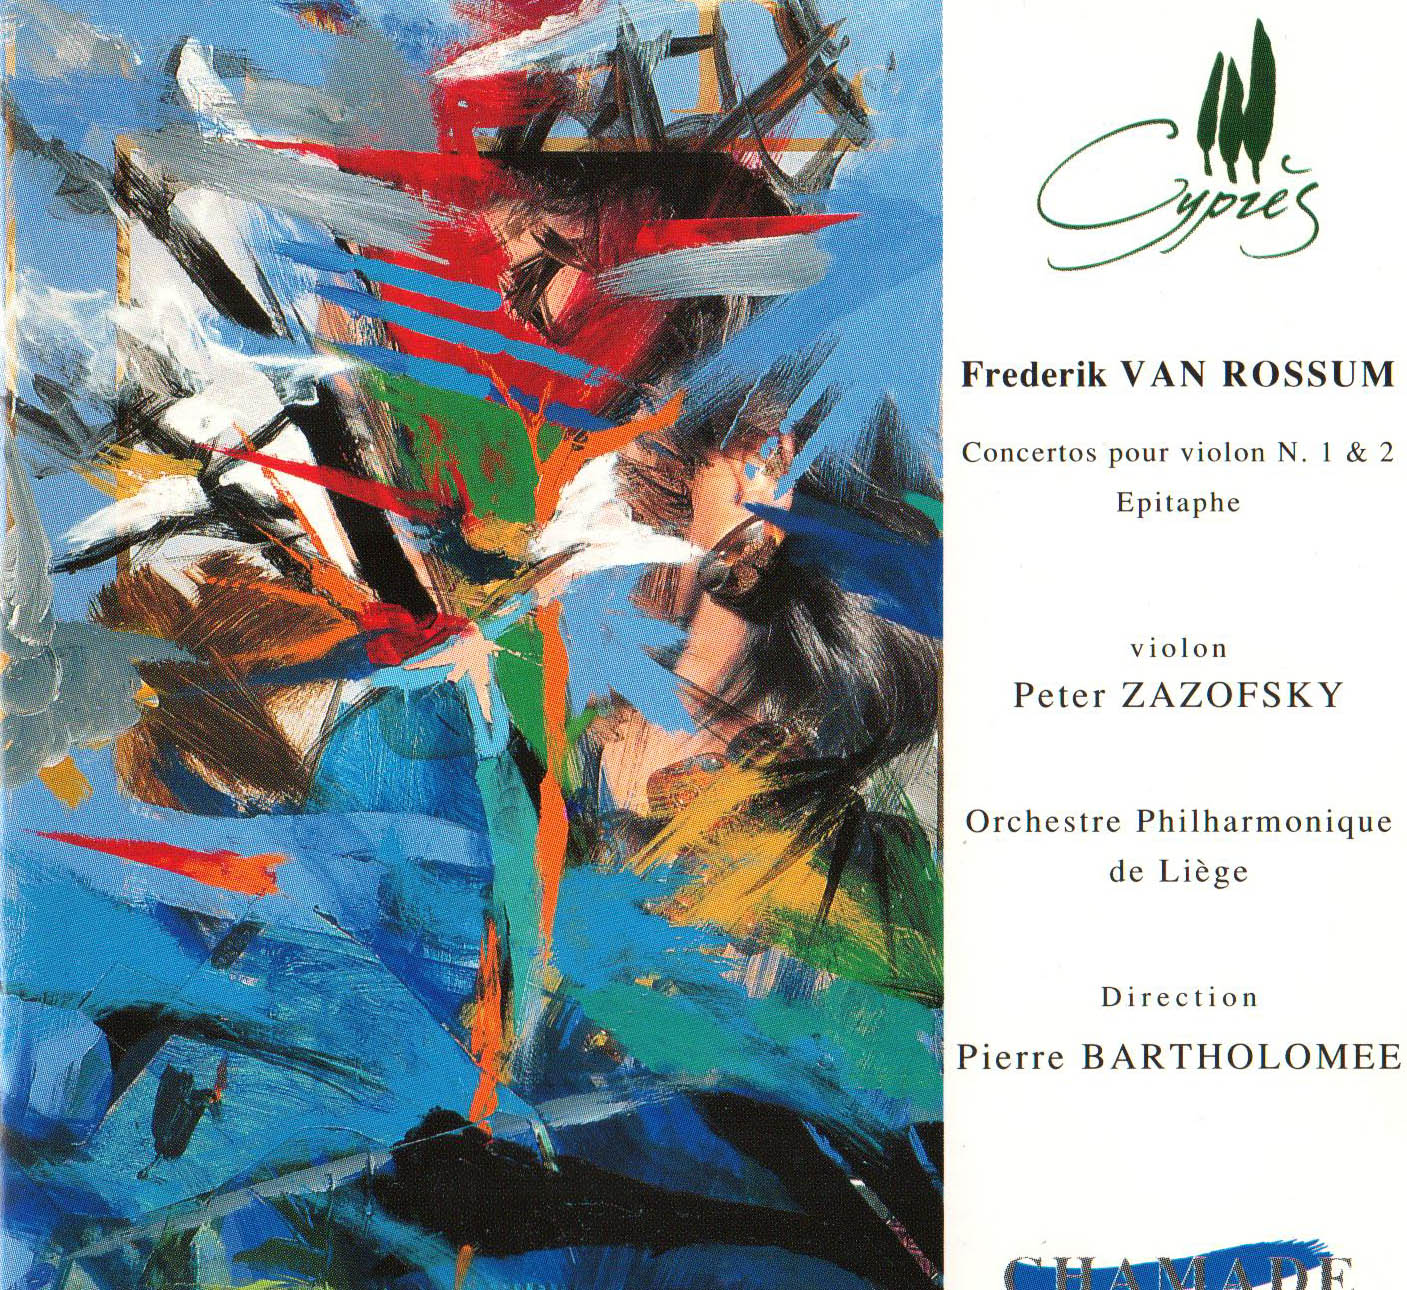 Van Rossum- Concertos pour violon 1 & 2 – Épitaphe - OPRL - Liège Zazofsky